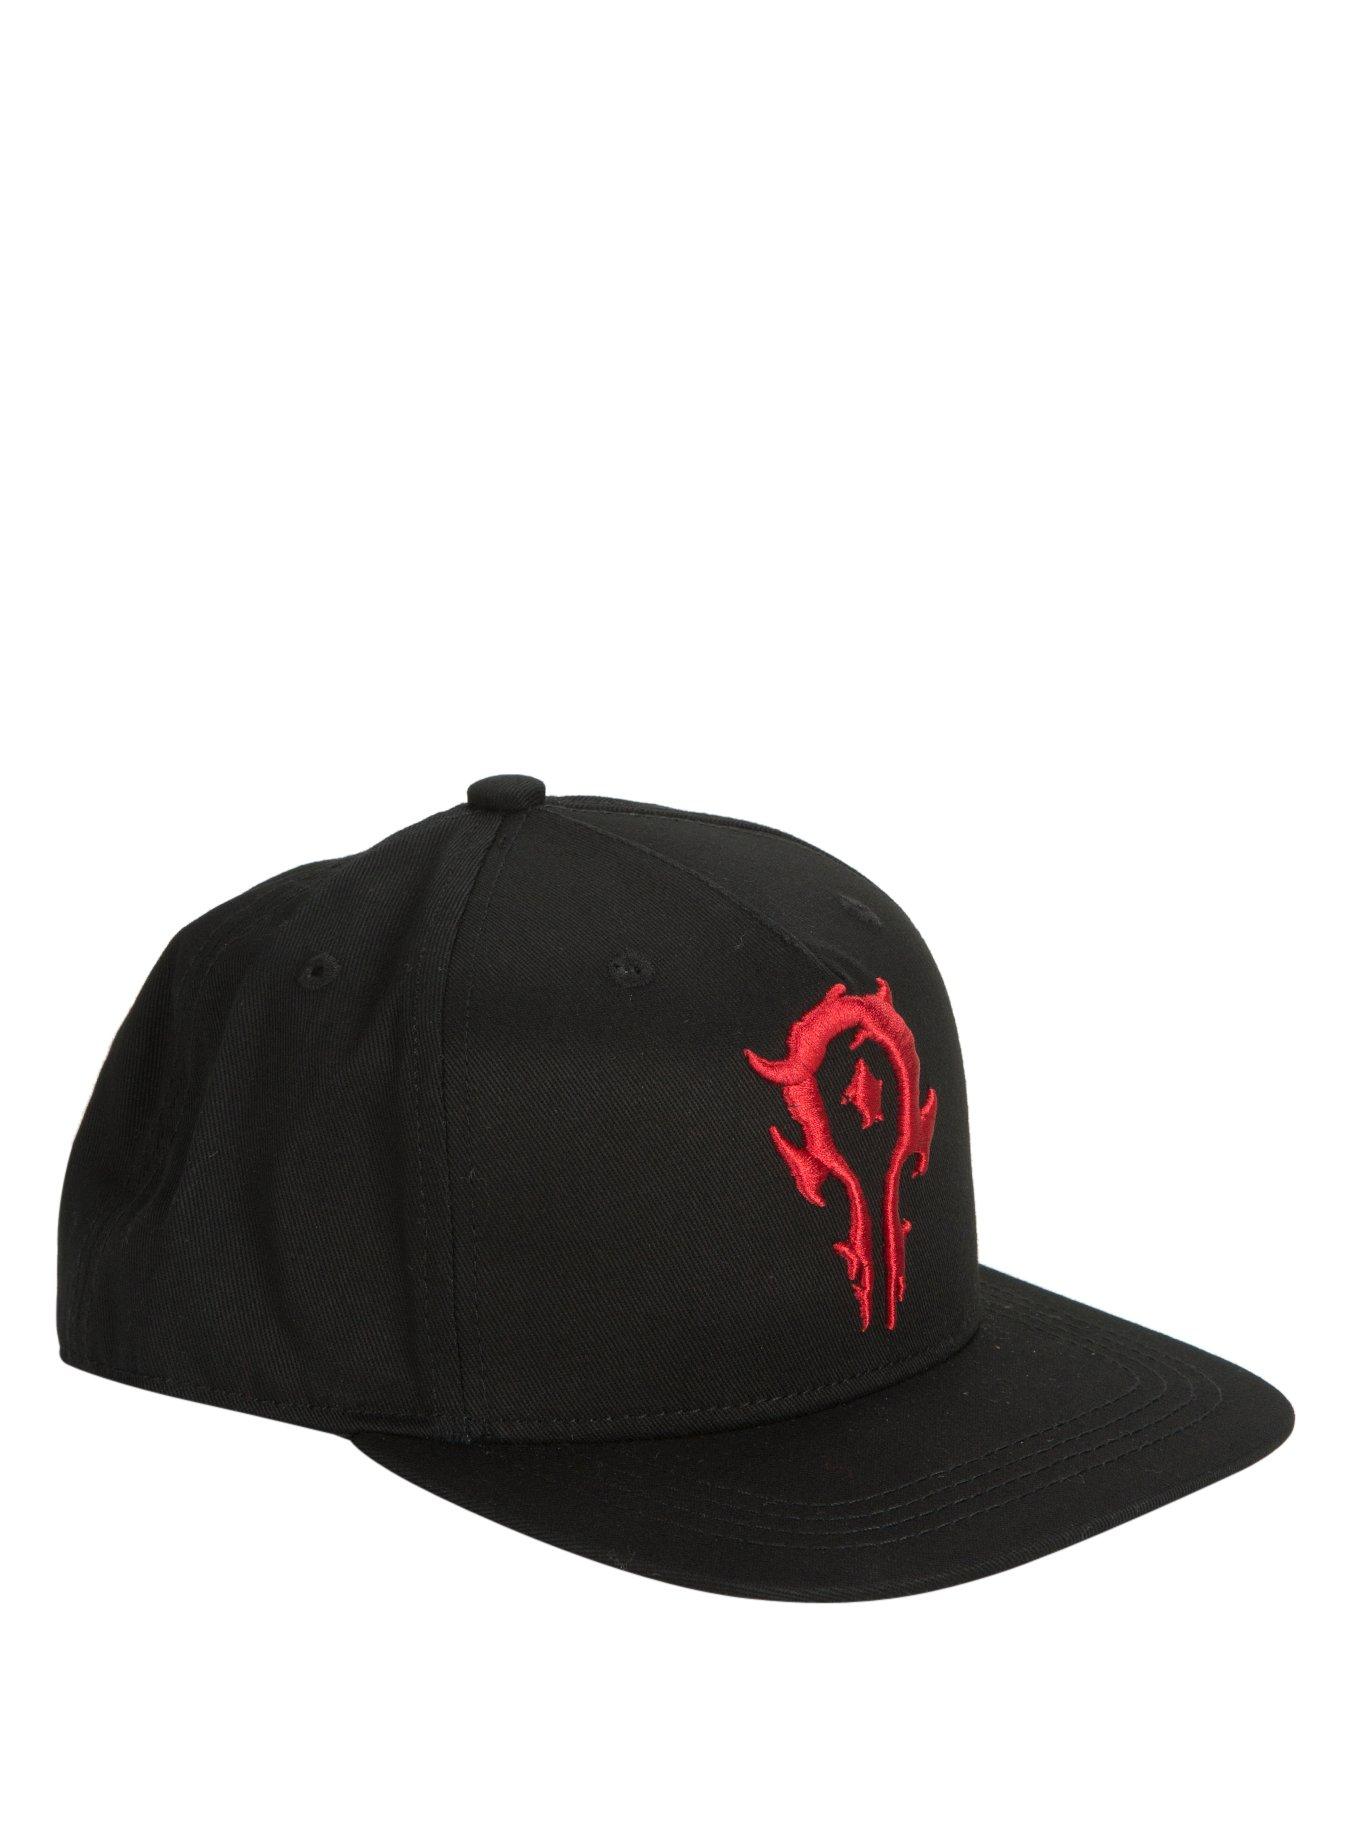 World Of Warcraft Horde Embroidered Snapback Hat, , hi-res